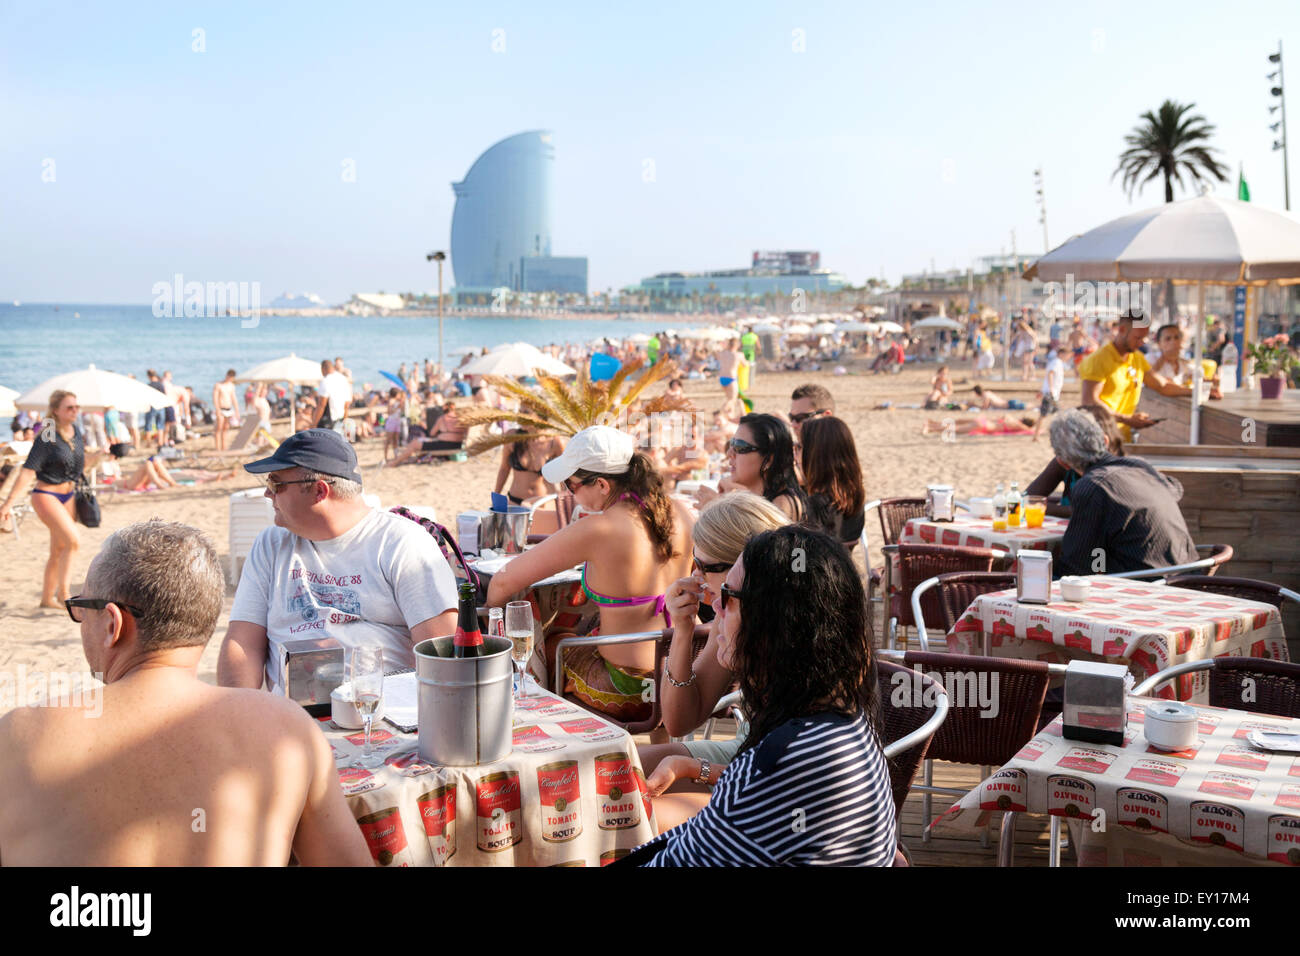 La gente seduta a un bar sulla spiaggia cafe, Platya de la Barceloneta ( Barceloneta Beach ), Barcelona, Spagna Europa Foto Stock